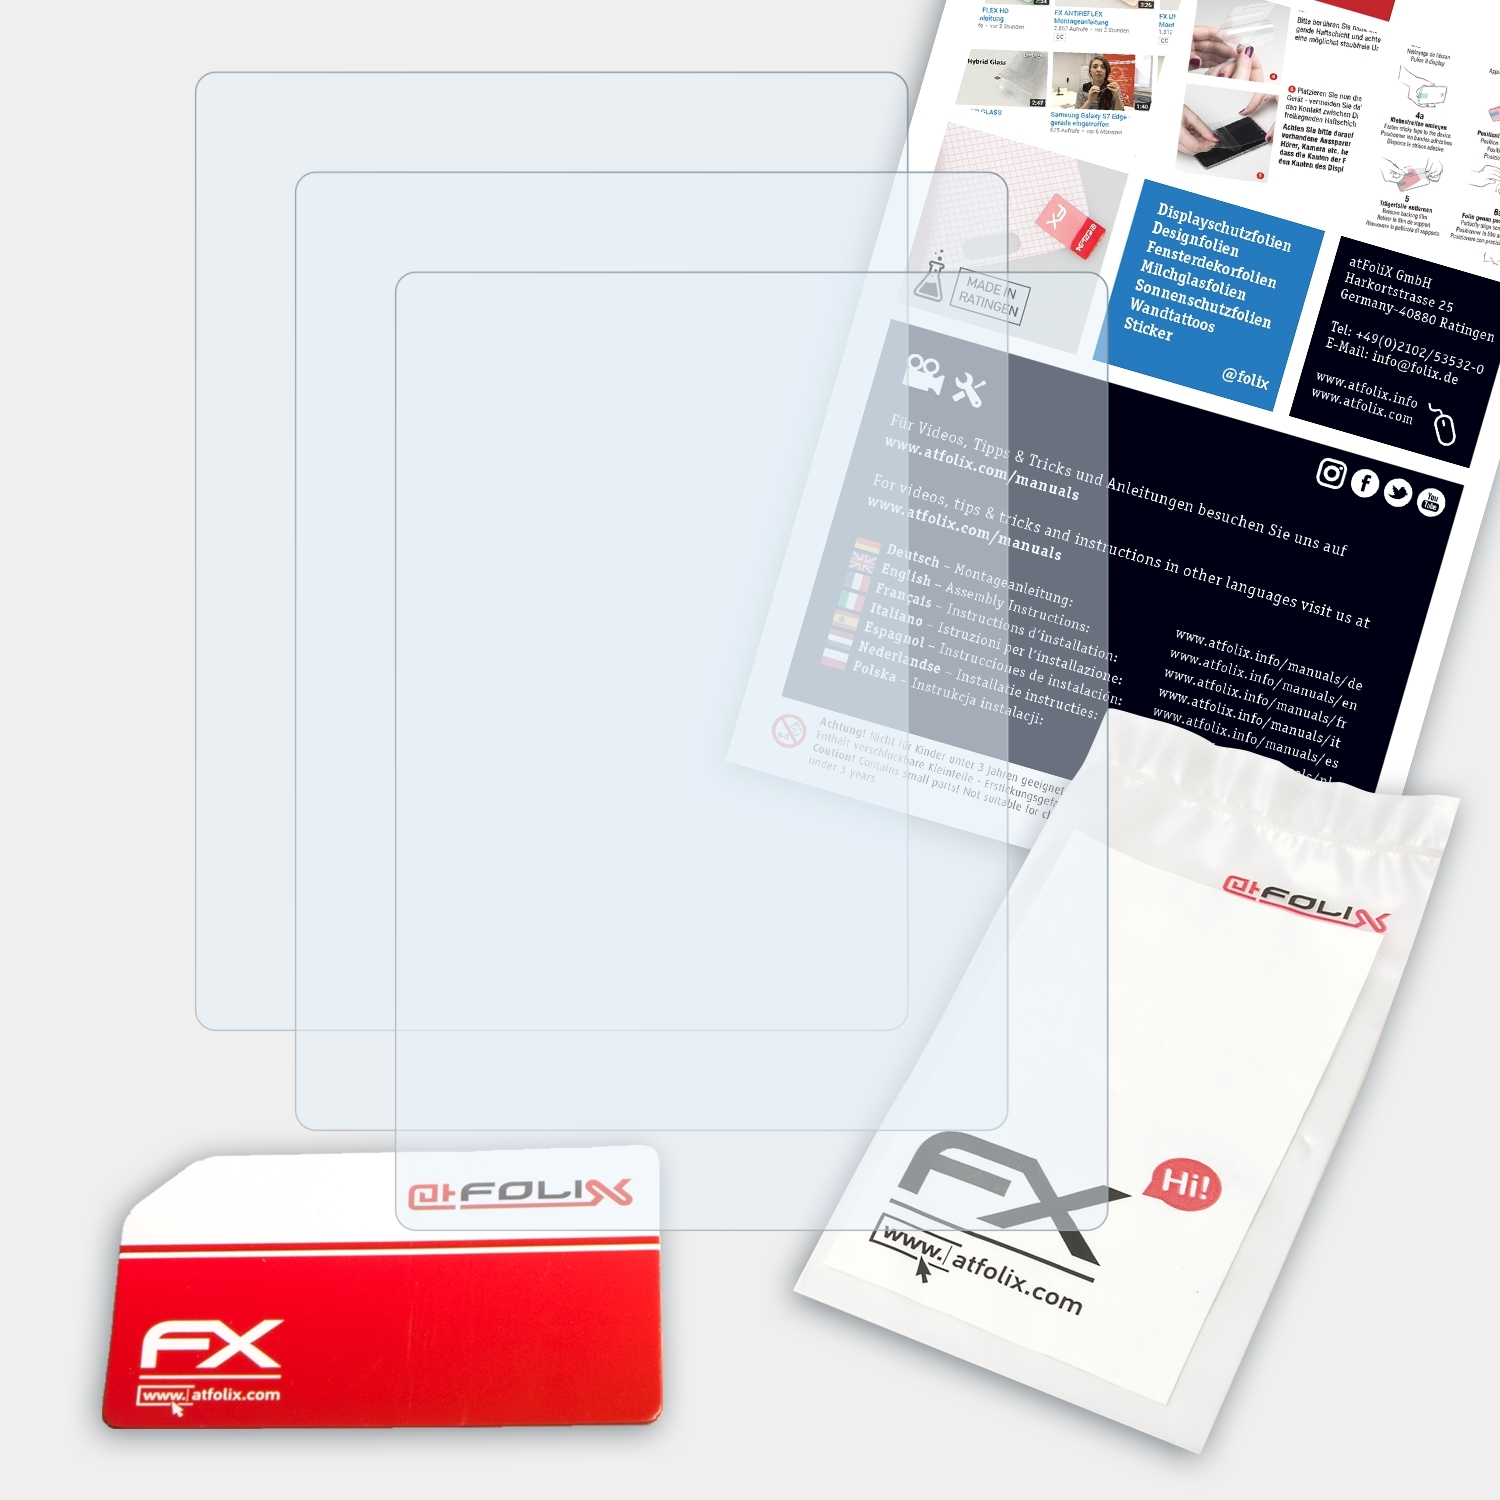 ATFOLIX 3x FX-Clear 350) Displayschutz(für Powerflex Rollei